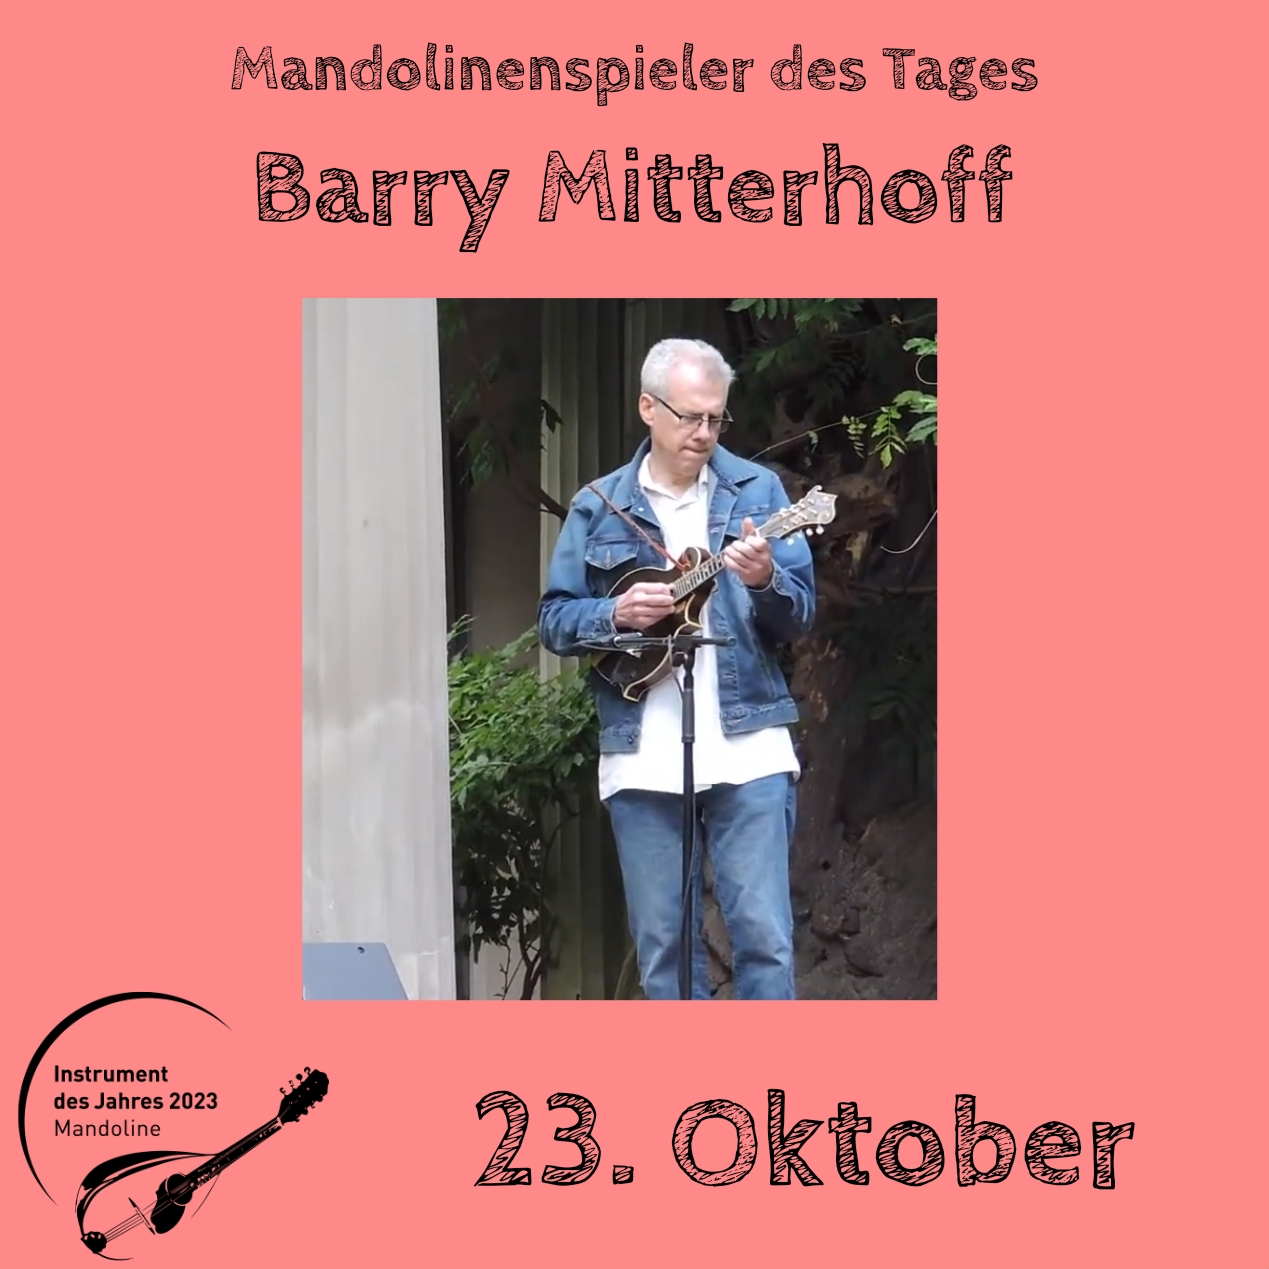 23. Oktober - Barry Mitterhoff Instrument des Jahres 2023 Mandolinenspieler Mandolinenspielerin des Tages